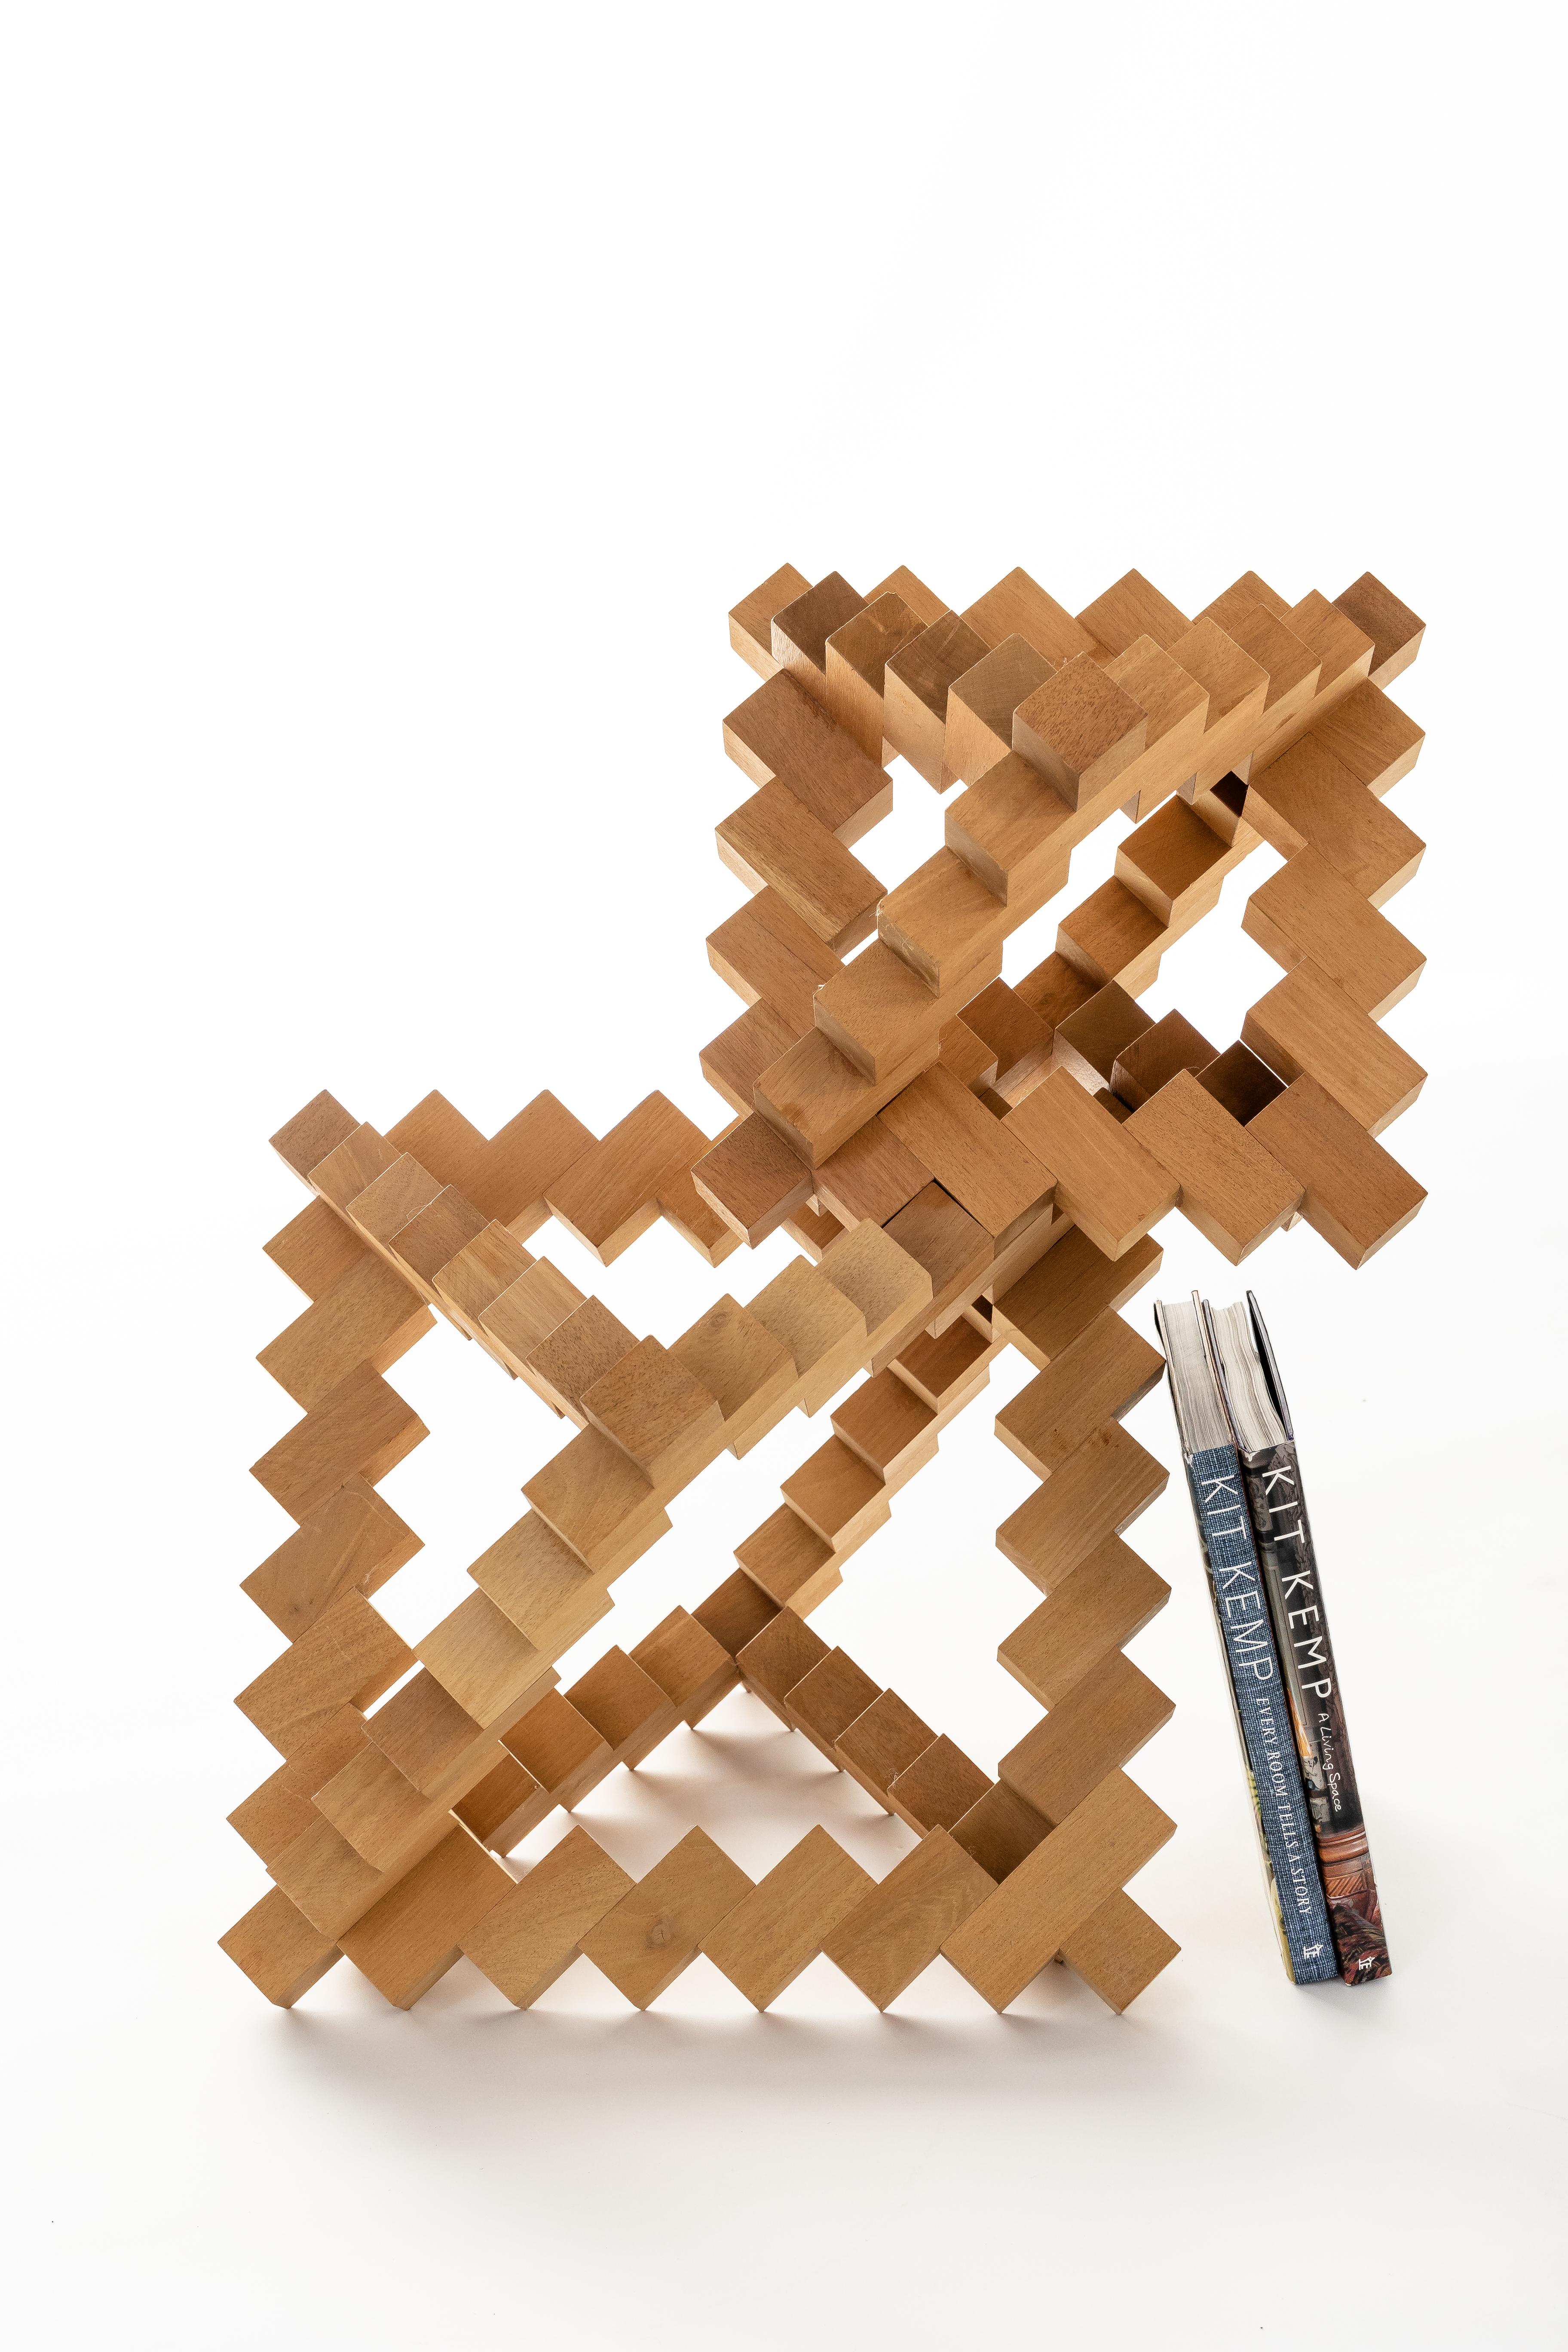 Magnifique sculpture abstraite géométrique en bois réalisée par Morton Rachofoky.

Les dimensions varient en fonction de la configuration. 

